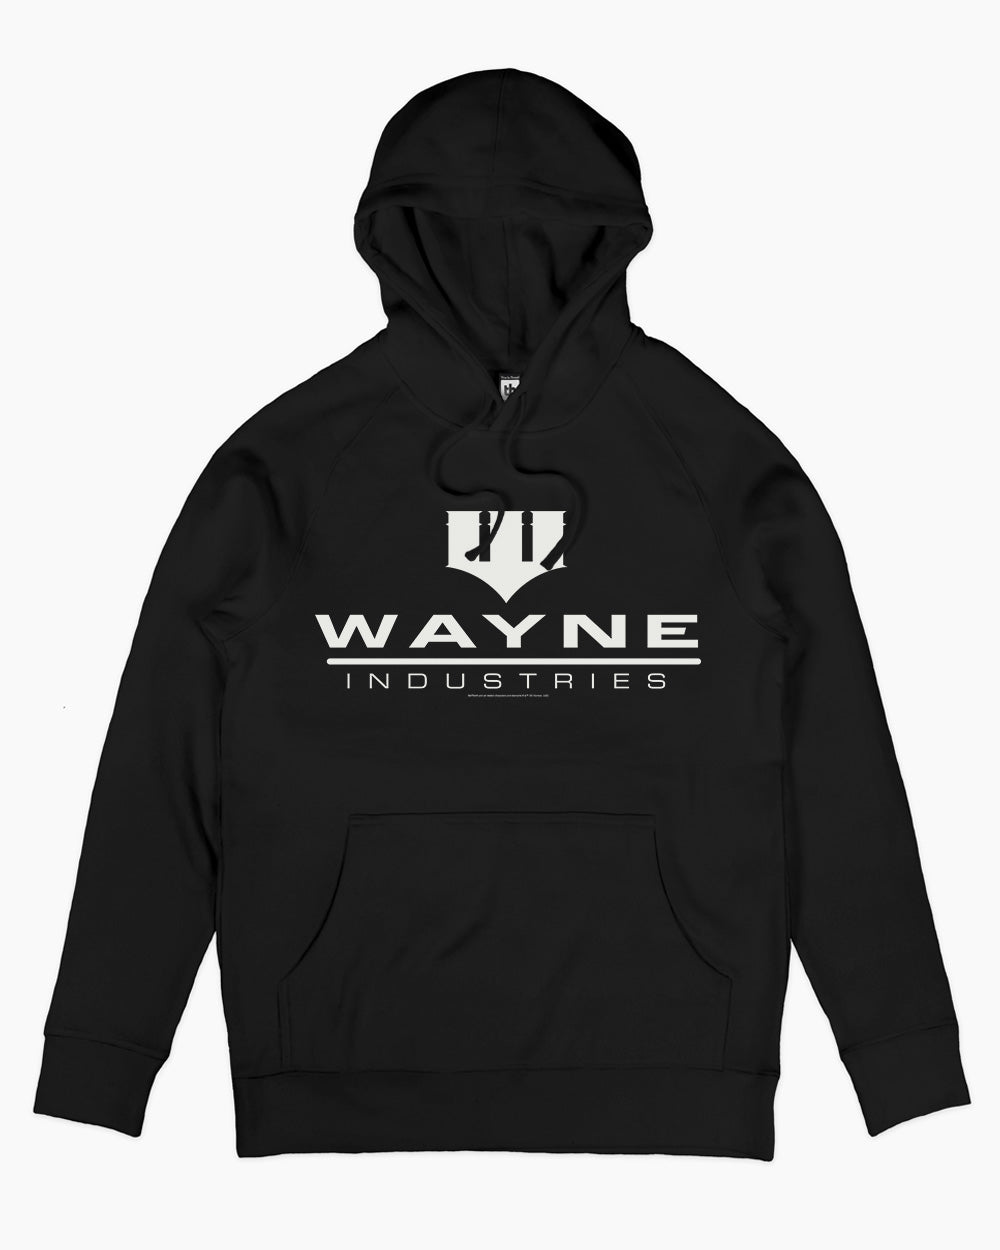 Wayne Industries Hoodie Australia Online #colour_black